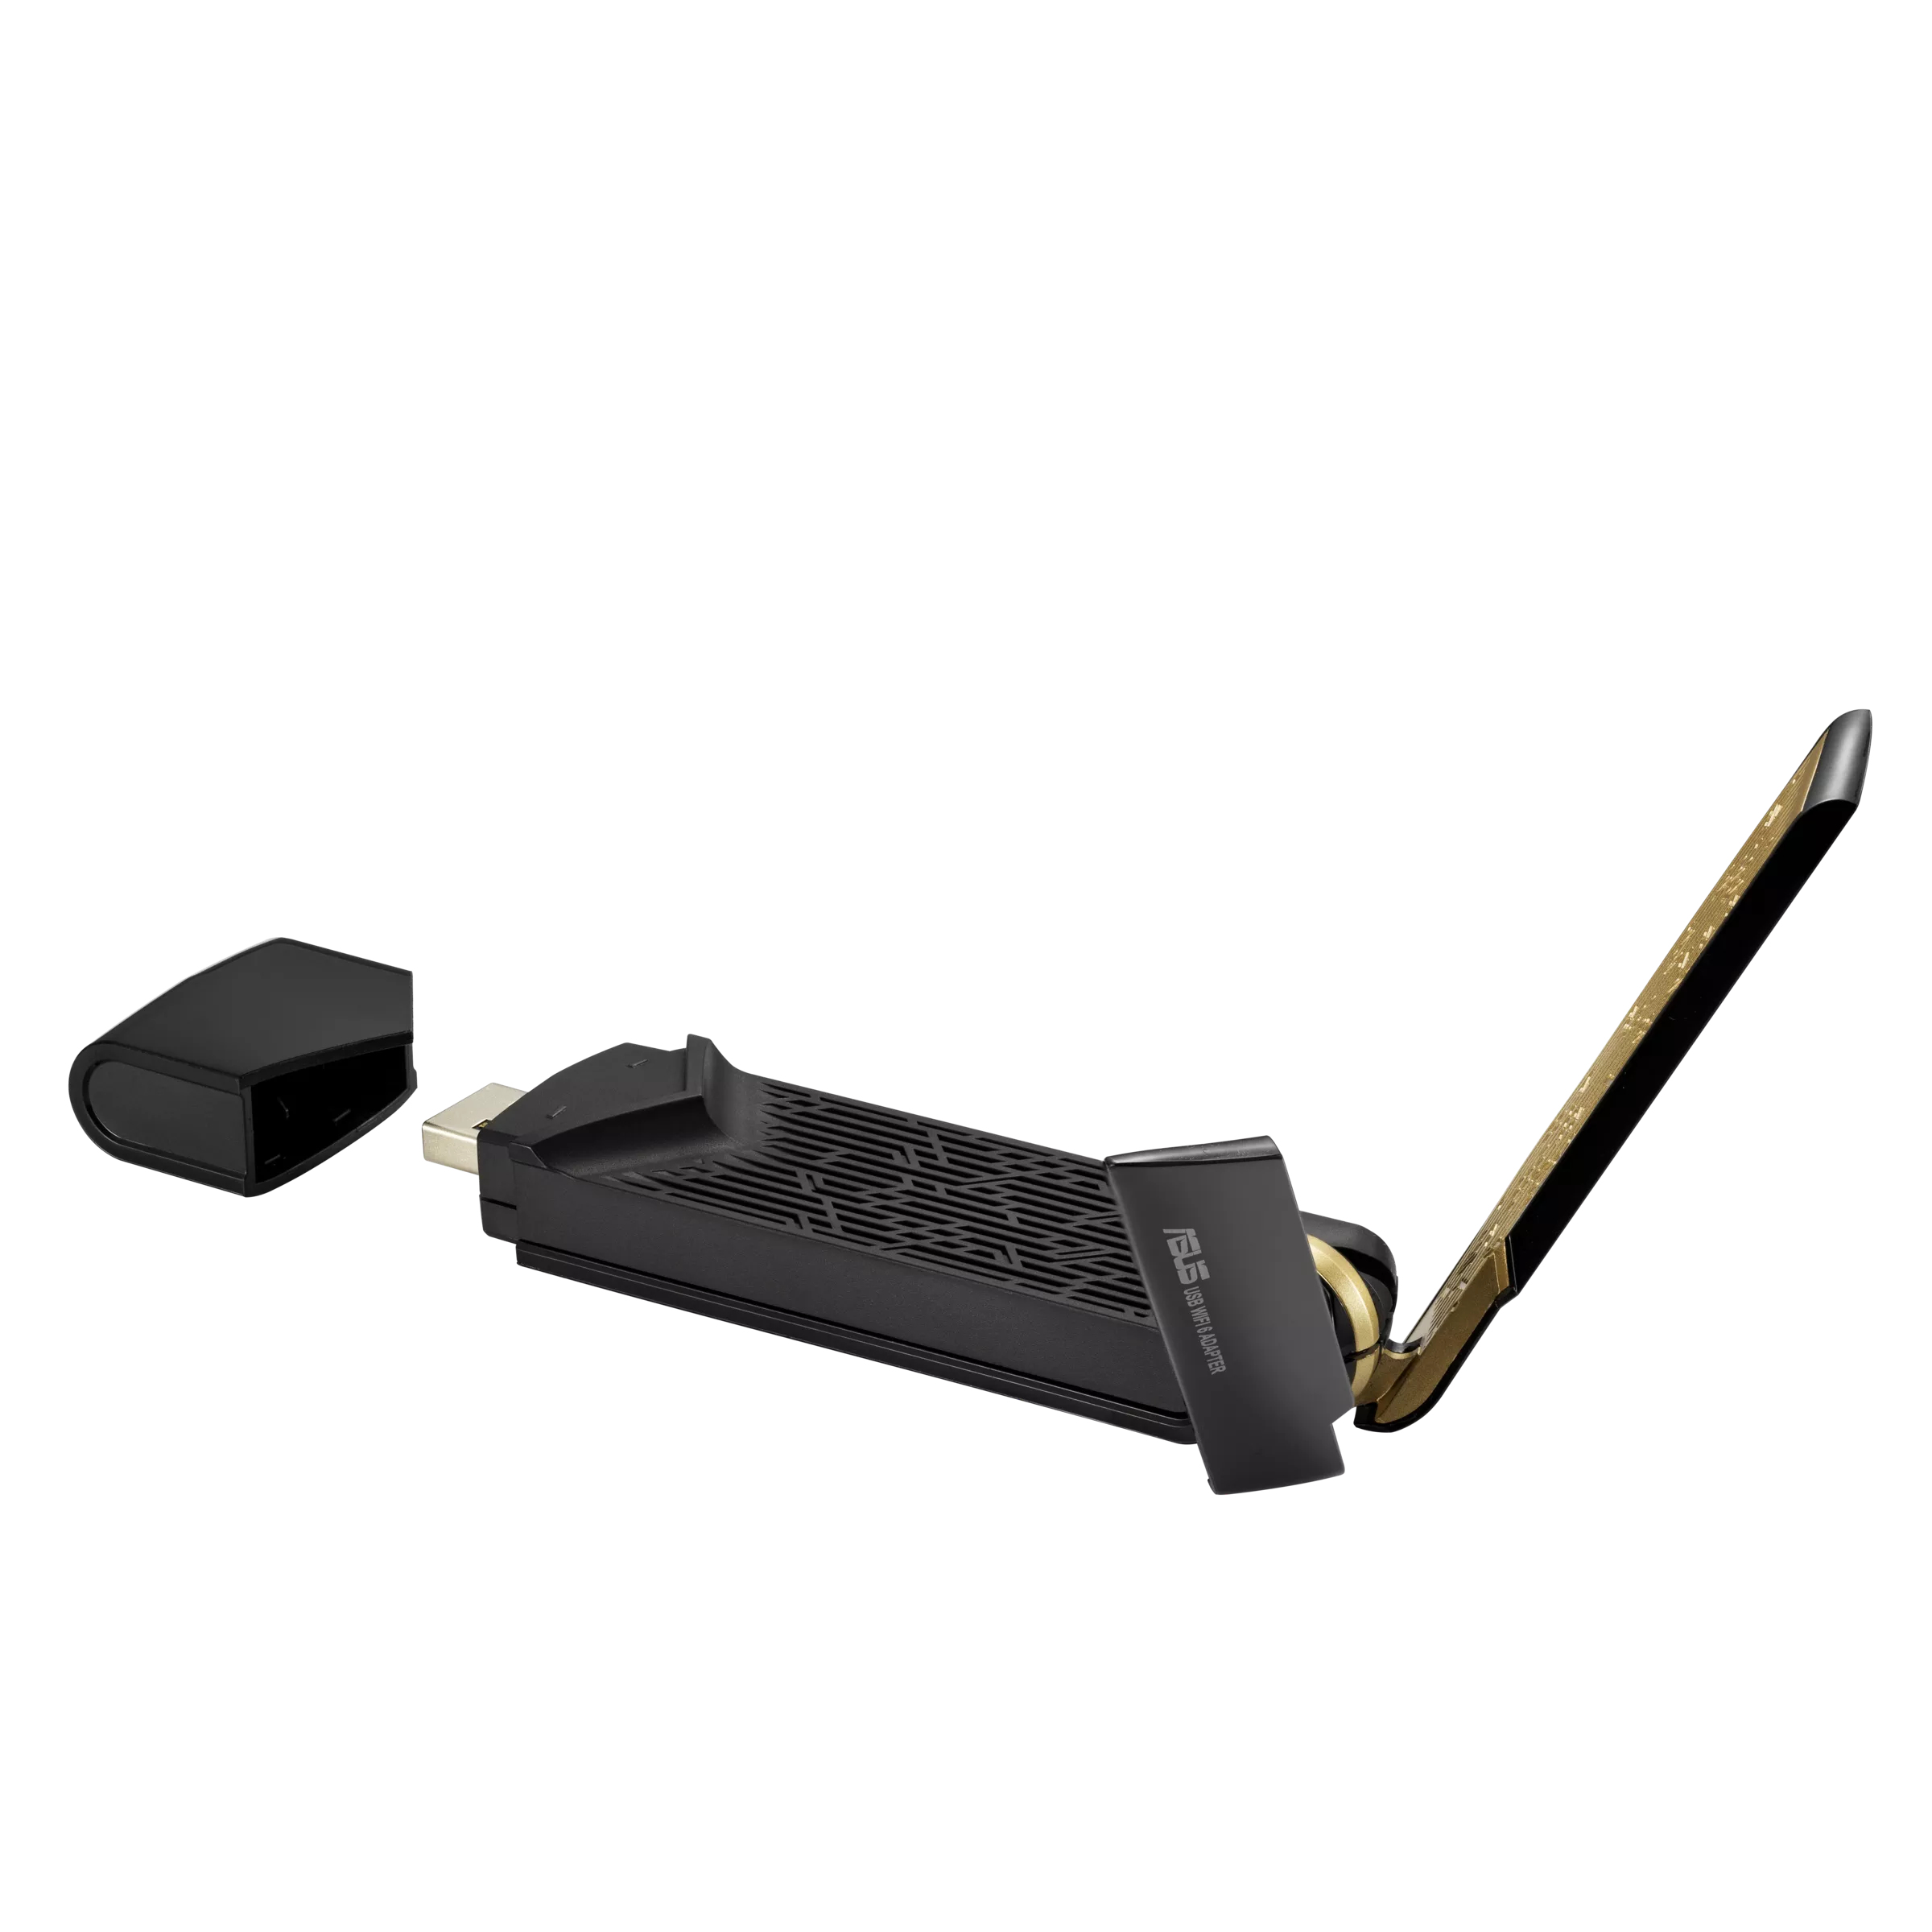 Asus - Adaptador USB ASUS USB-AX56 s/Base Dual-Band AX1800 WiFi 6